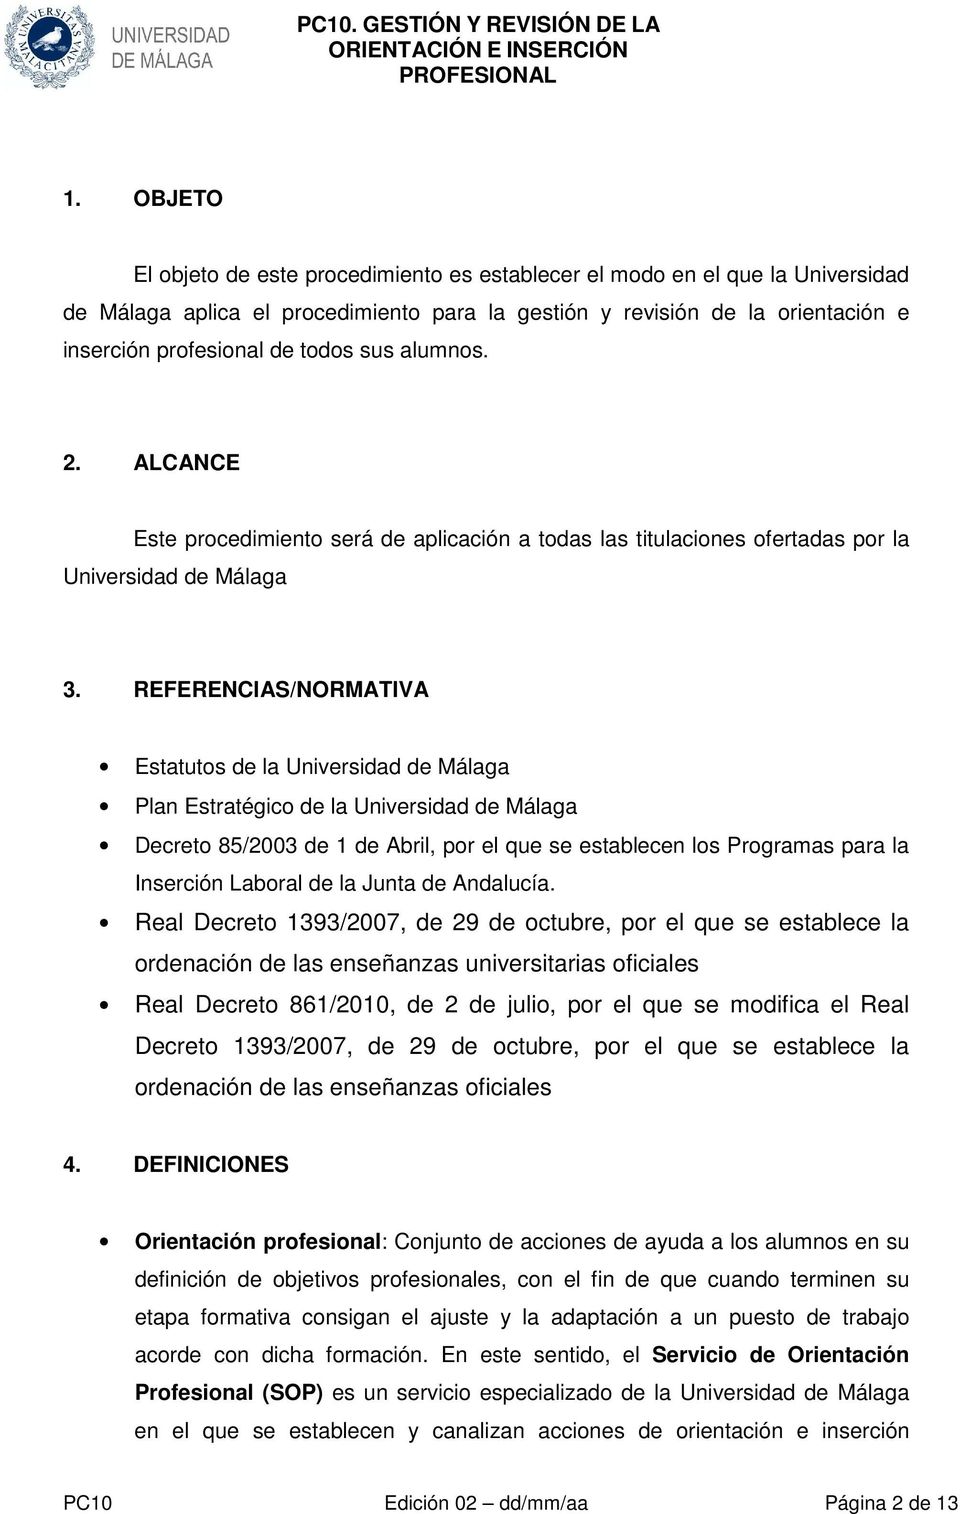 REFERENCIAS/NORMATIVA Estatutos de la Universidad de Málaga Plan Estratégico de la Universidad de Málaga Decreto 85/2003 de 1 de Abril, por el que se establecen los Programas para la Inserción